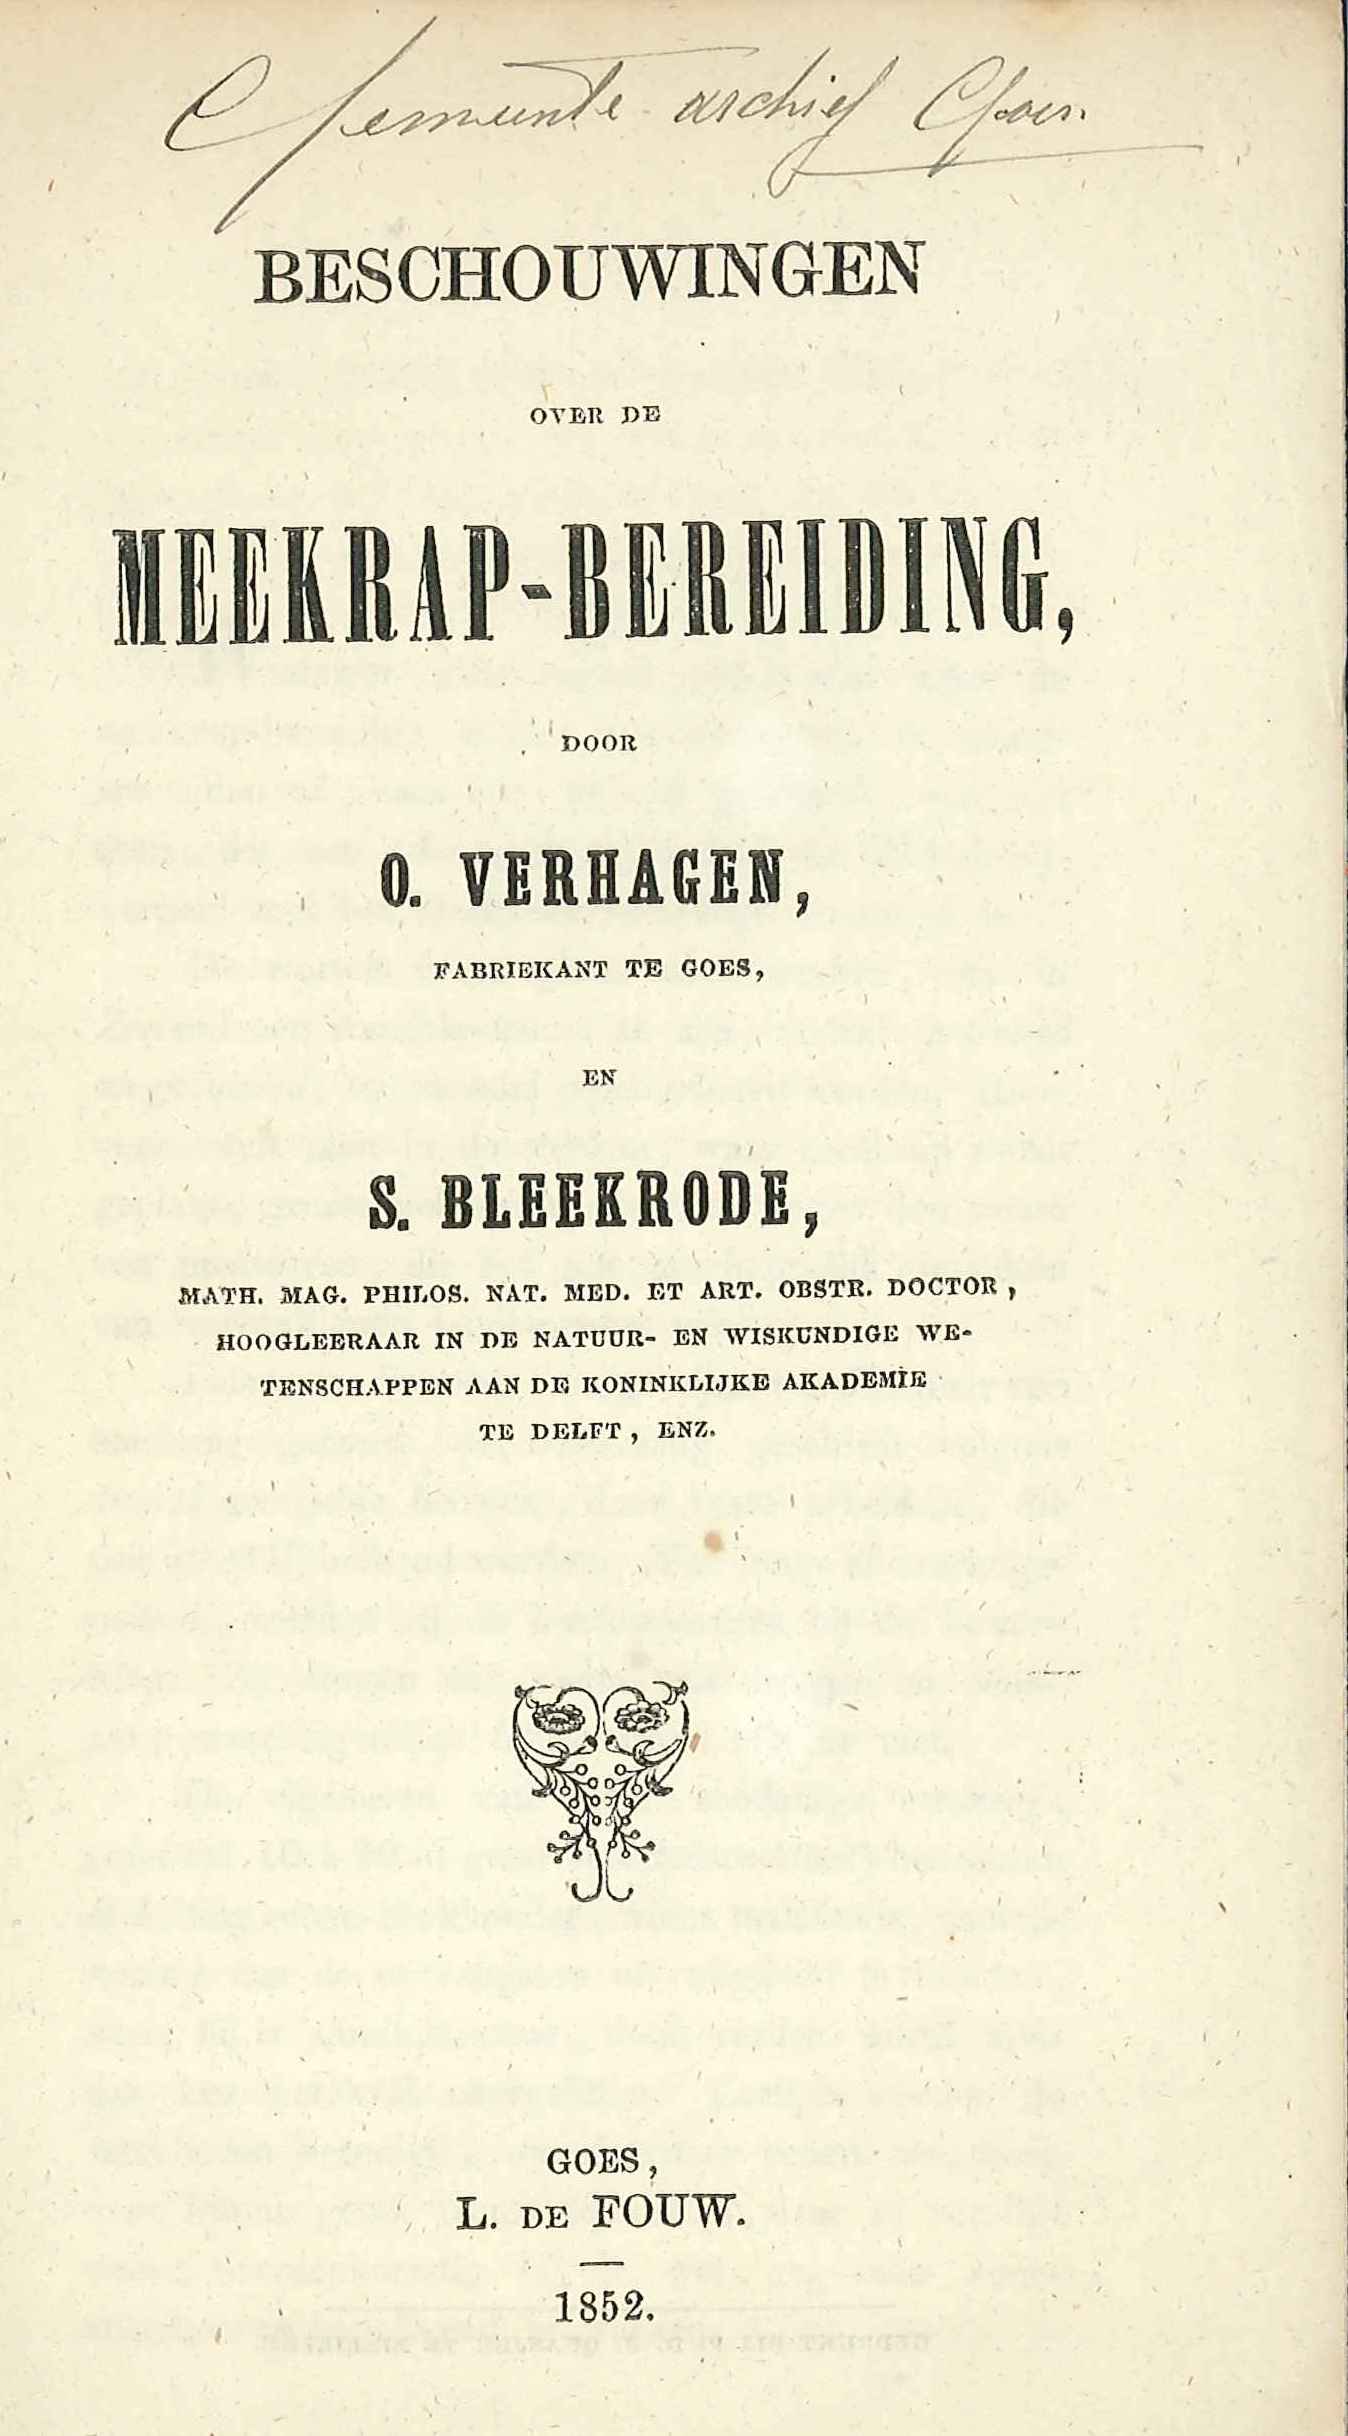 Beschouwingen over de meekrapbereiding, door O. Verhagen en S. Bleekrode. Goes 1852. GAG.HB.